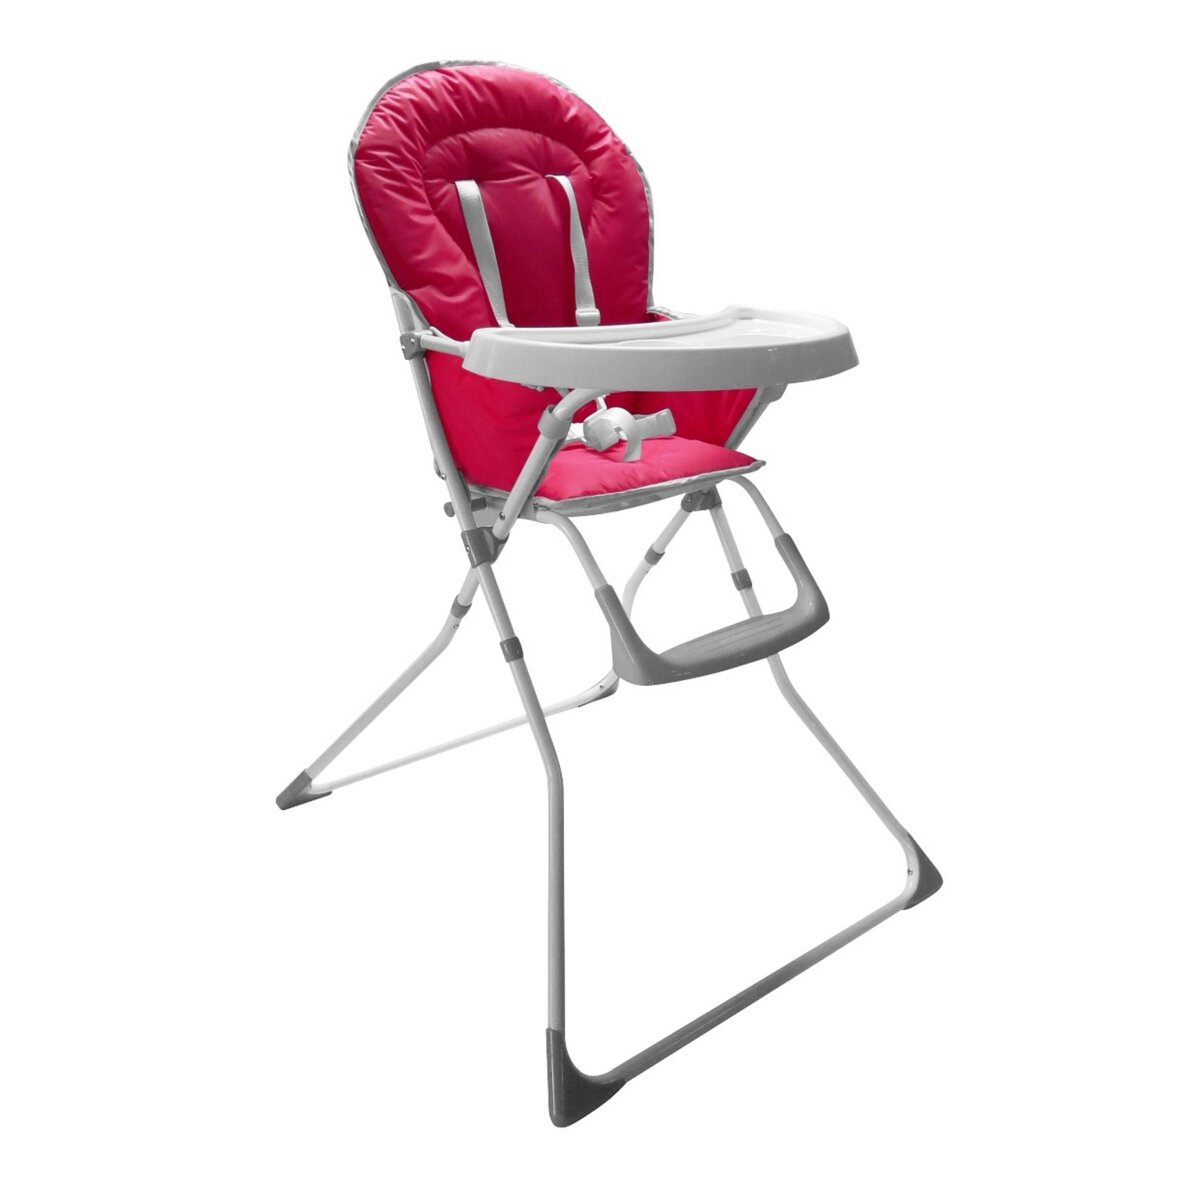 COMPTINE Chaise haute pliante bébé framboise/gris pas cher 